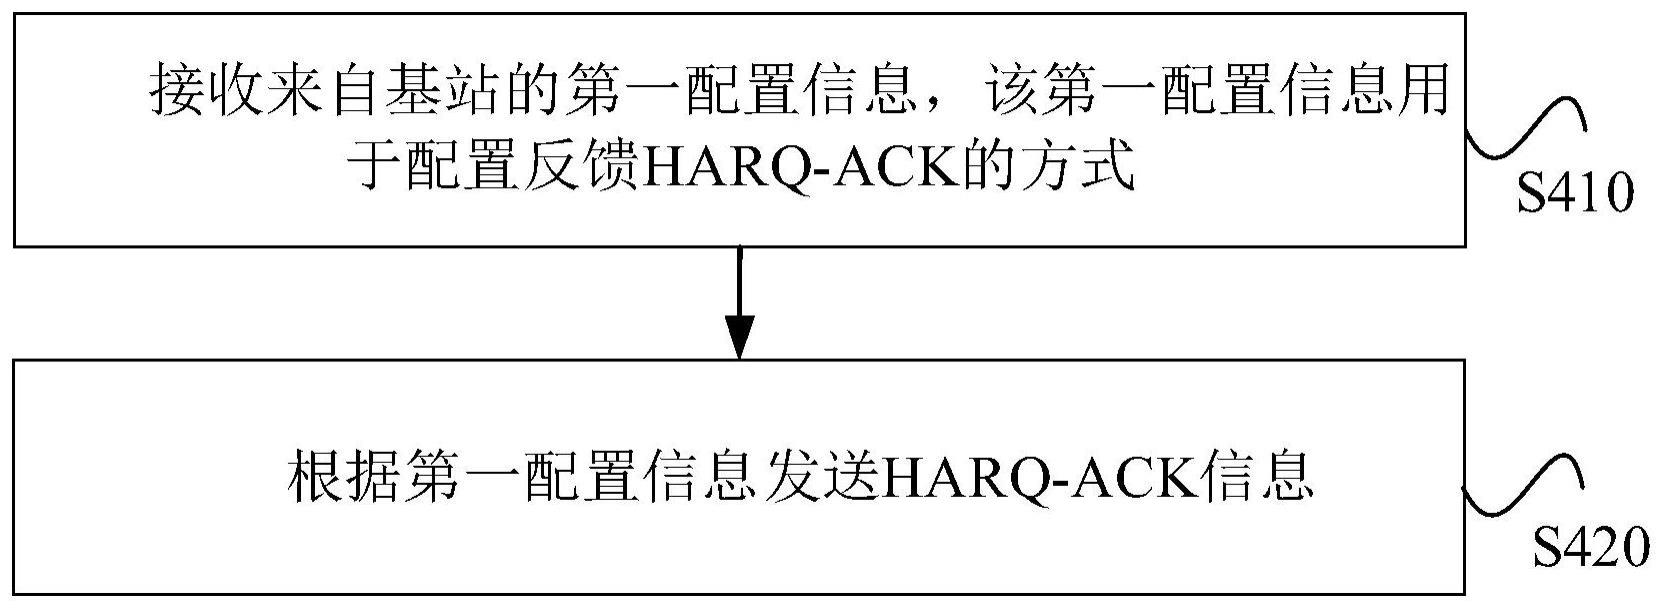 传输混合自动重传请求应答HARQ-ACK信息的方法及设备与流程